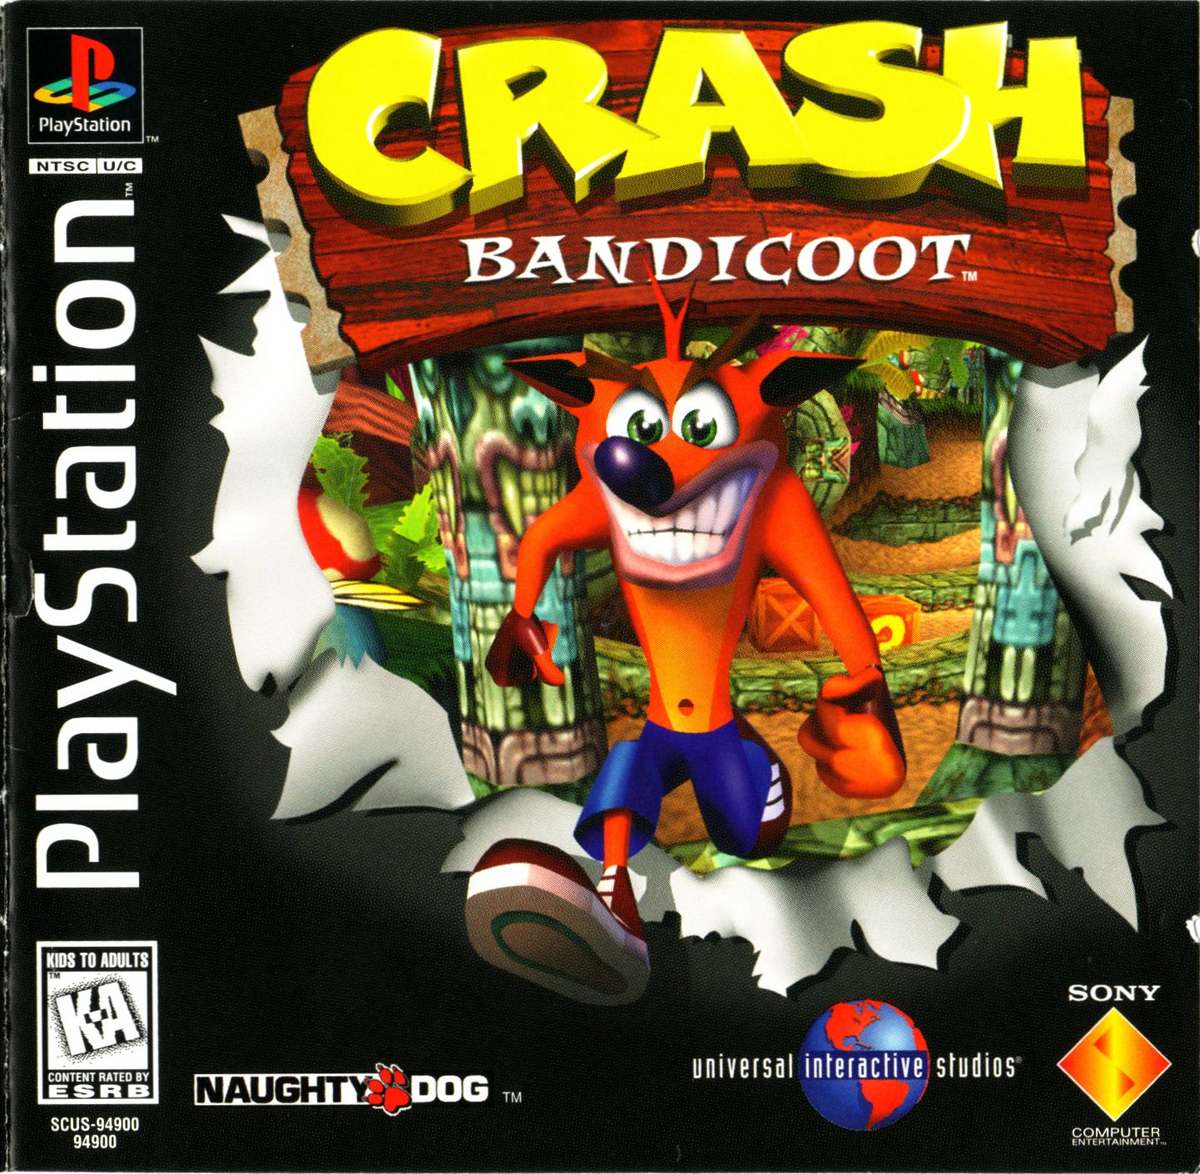 Crash Bandicoot, Bandipedia